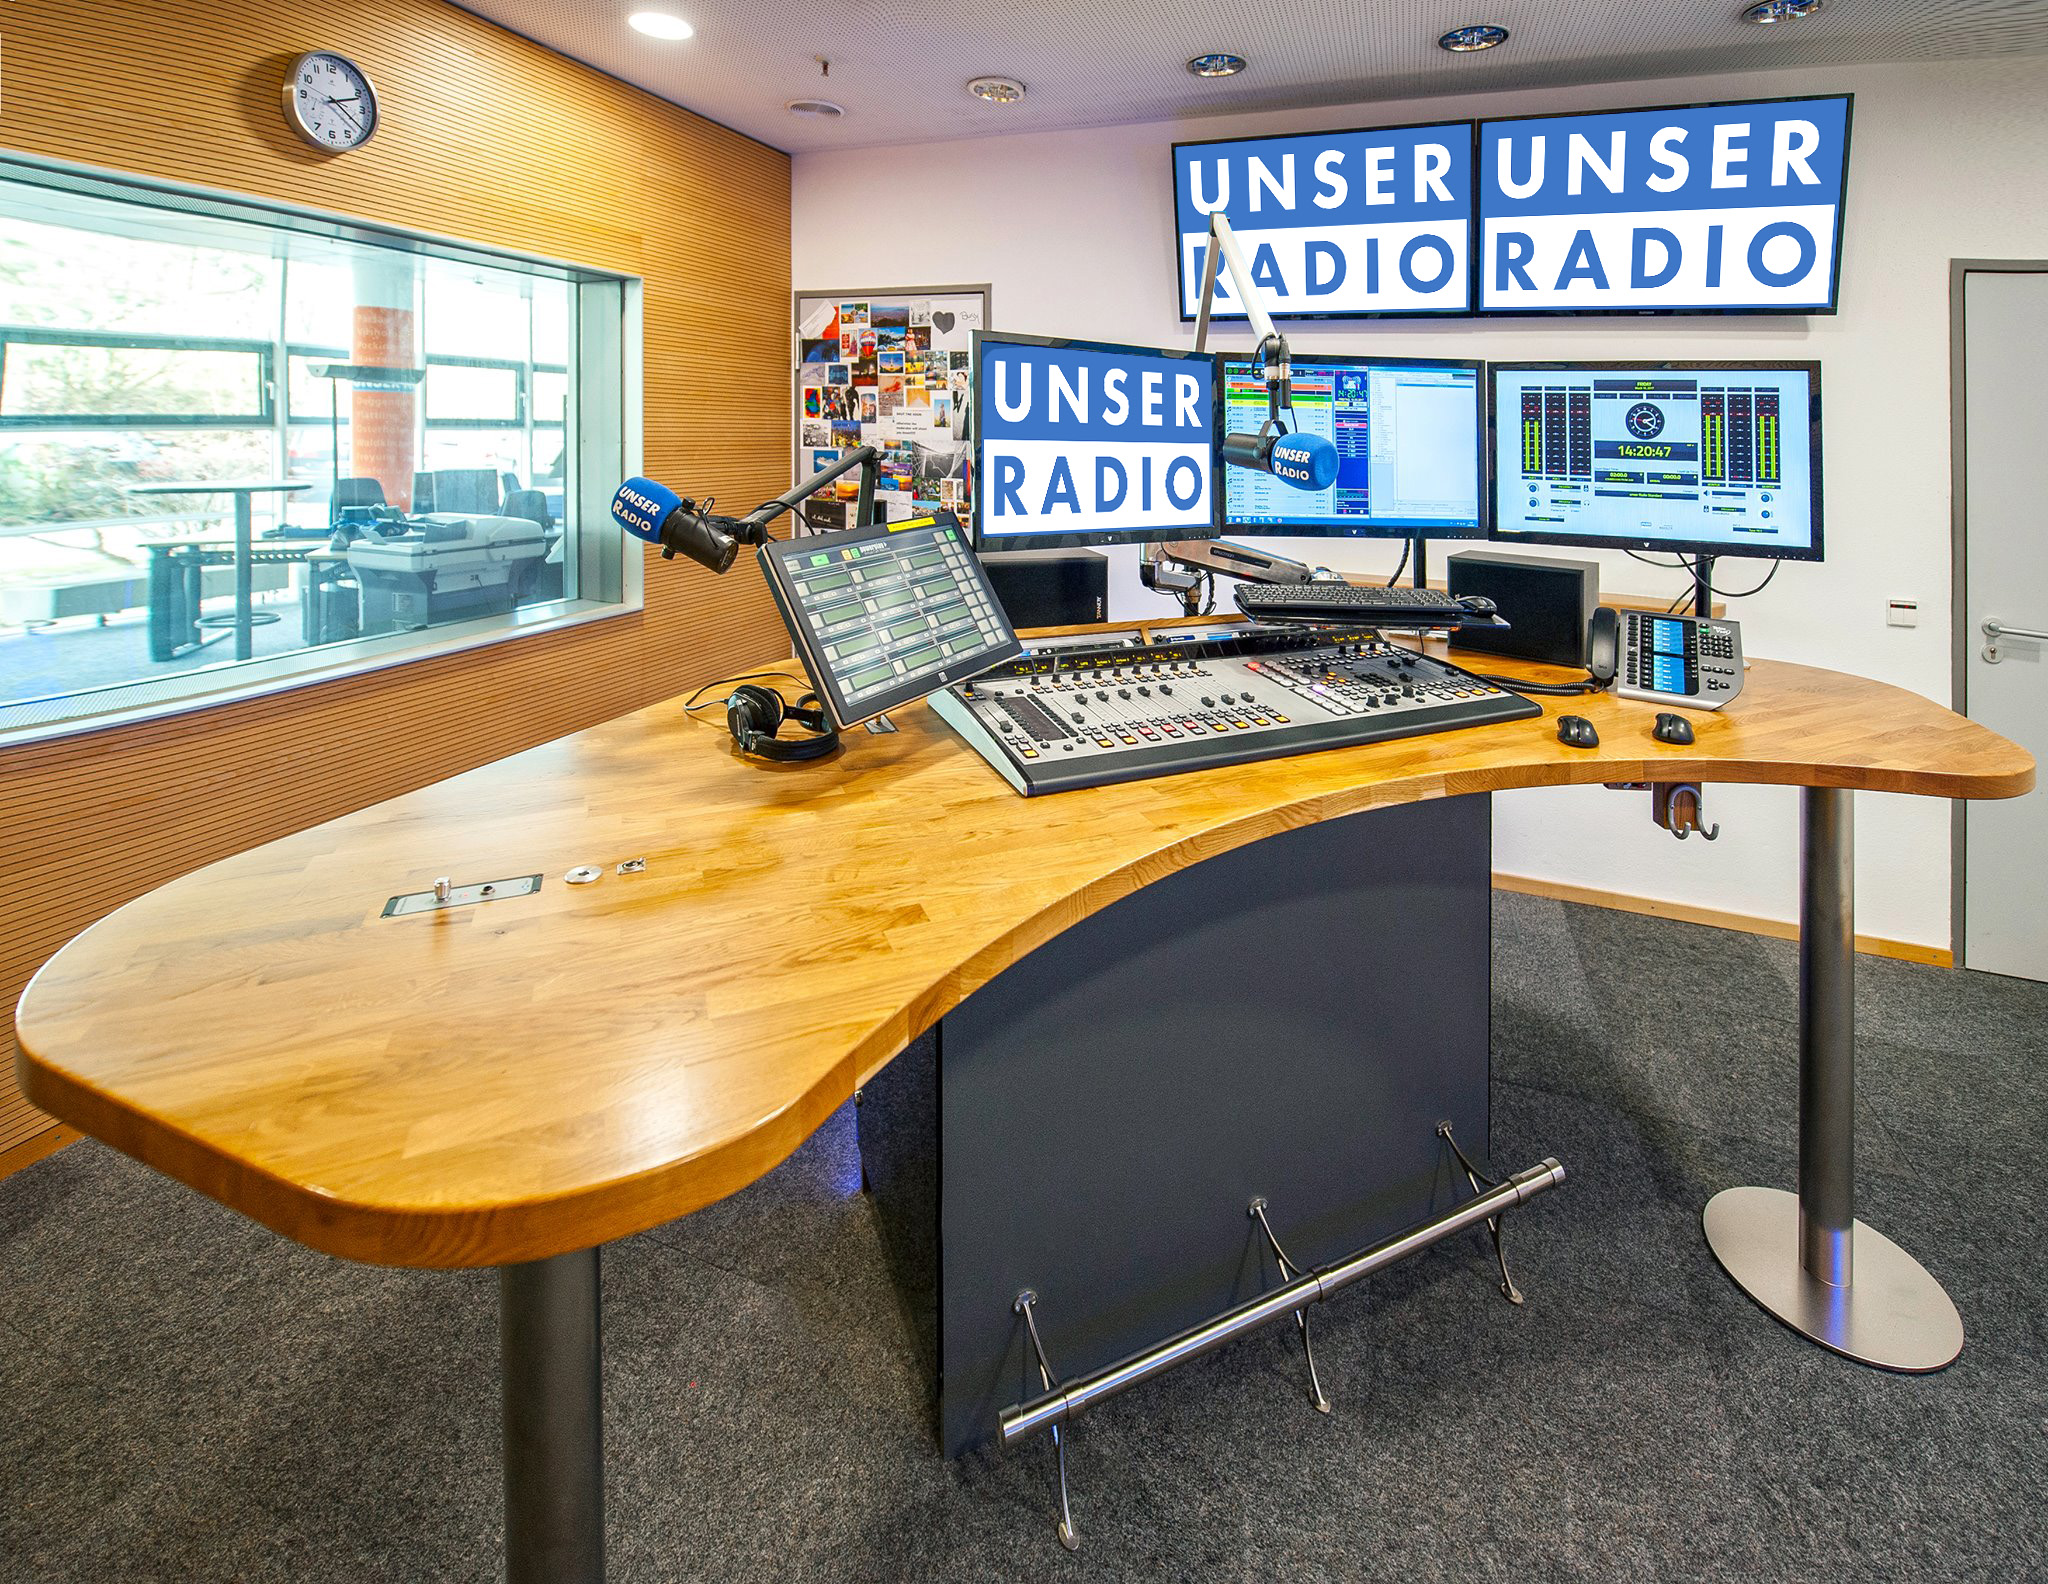 Bild Studio UNSER RADIO Passau zum Artikel "35 Jahre HITRADIO OHR & UNSER RADIO Passau"